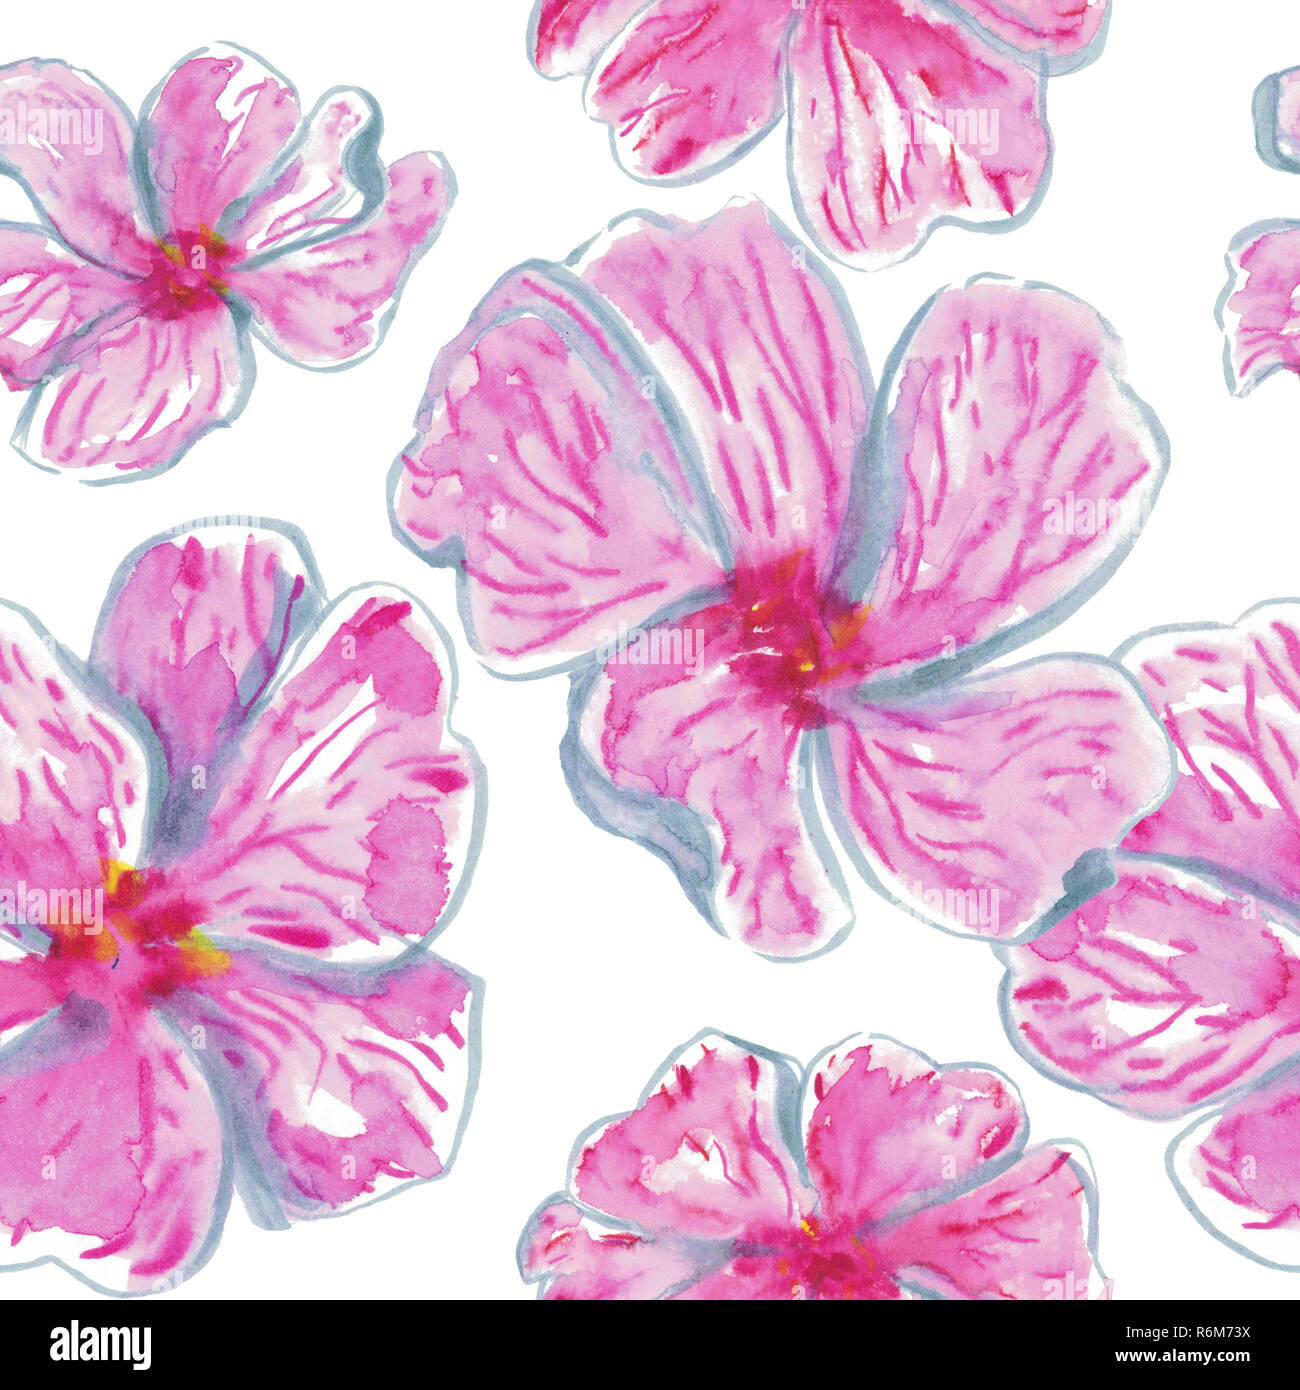 Aquarelle fleurs rose vif à la main motif transparent. Design pour cartes postales, valentines, textile, couvre et l'emballage. Banque D'Images